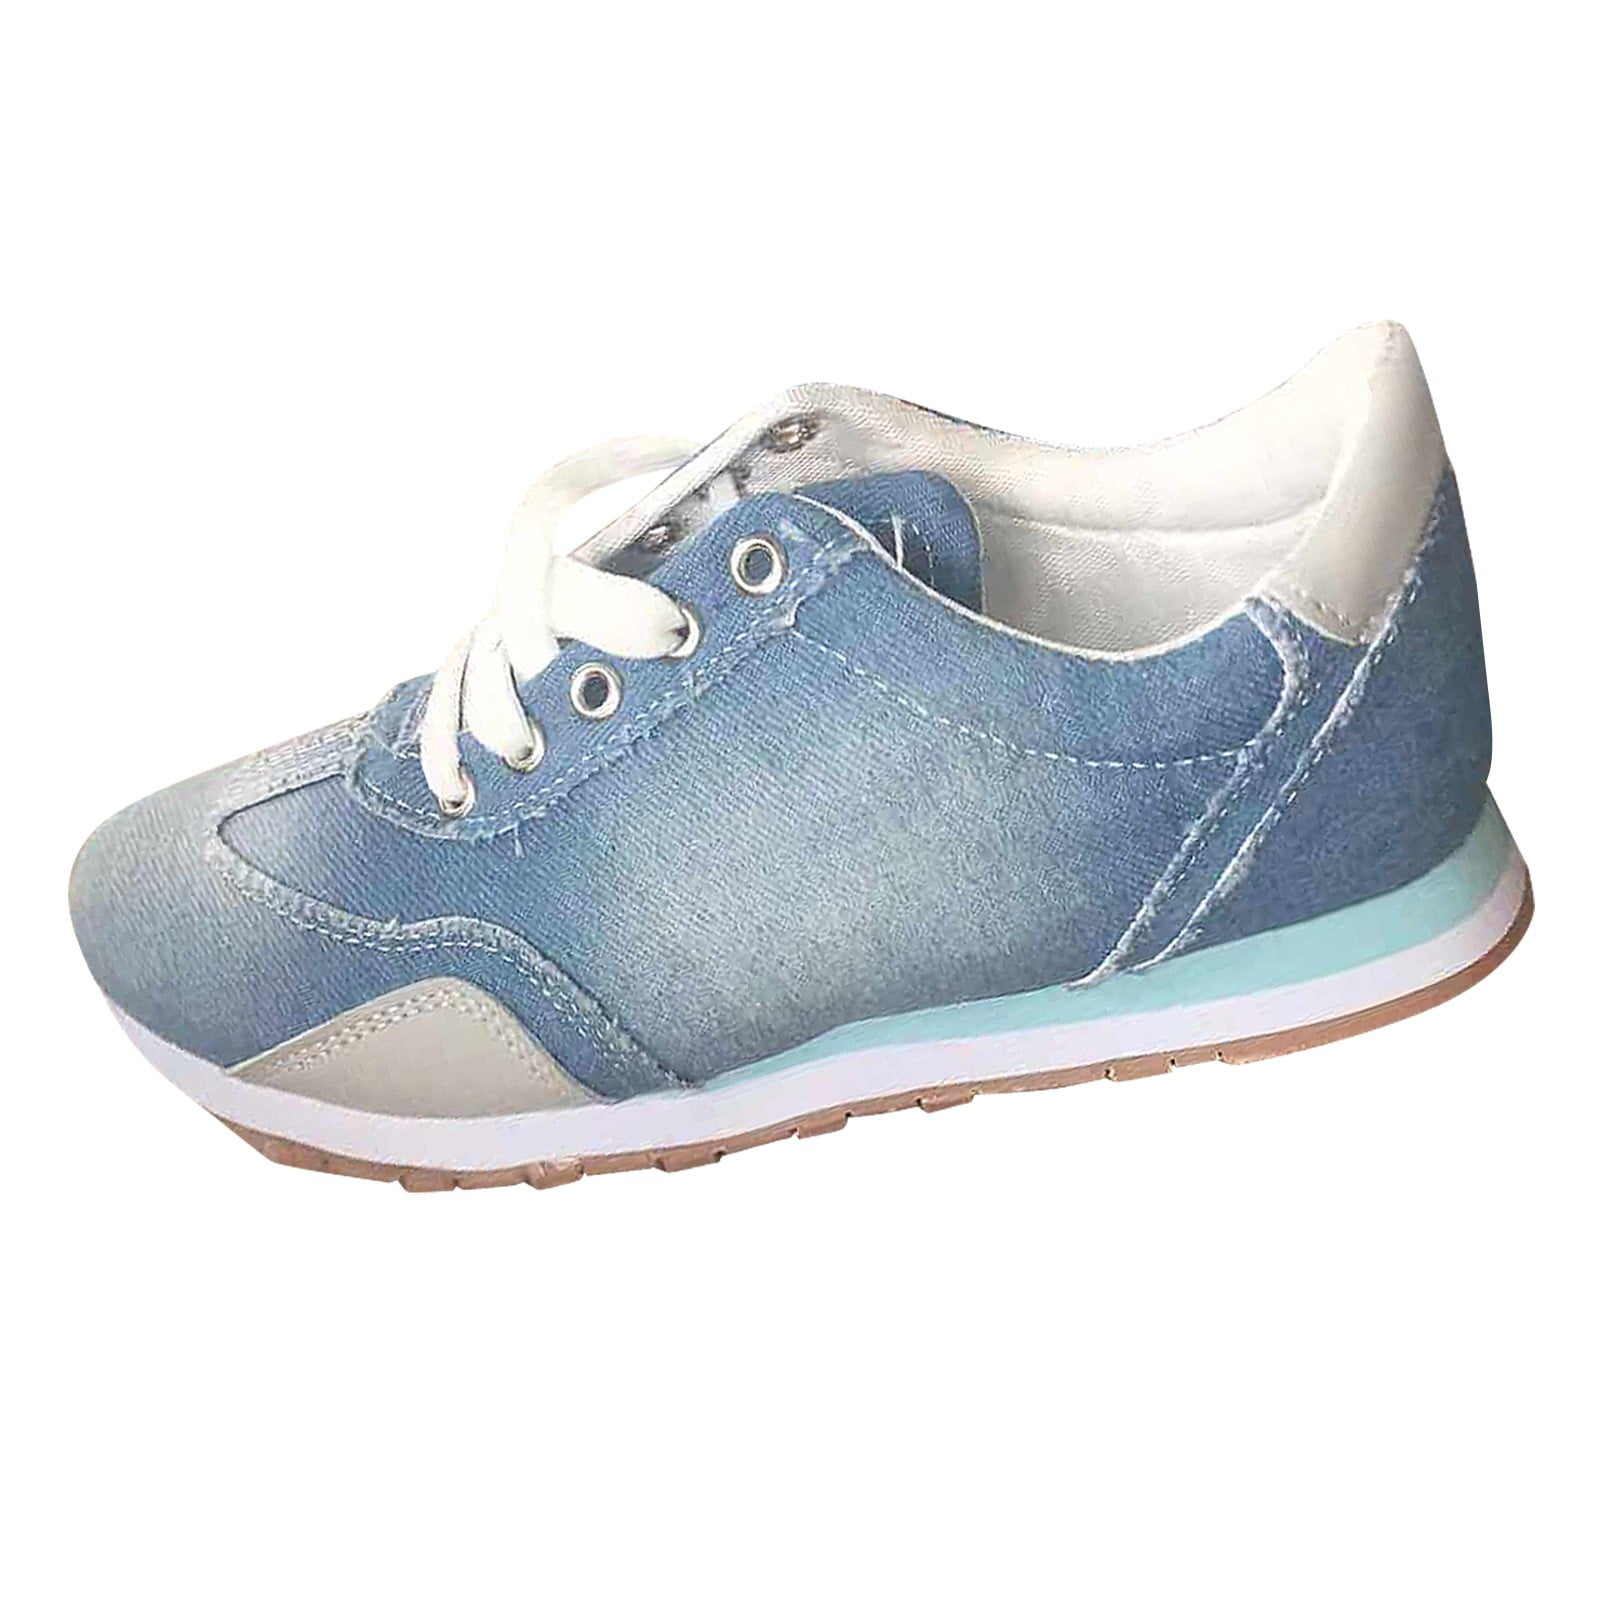 Women's Navy Blue/White Denim Sneakers